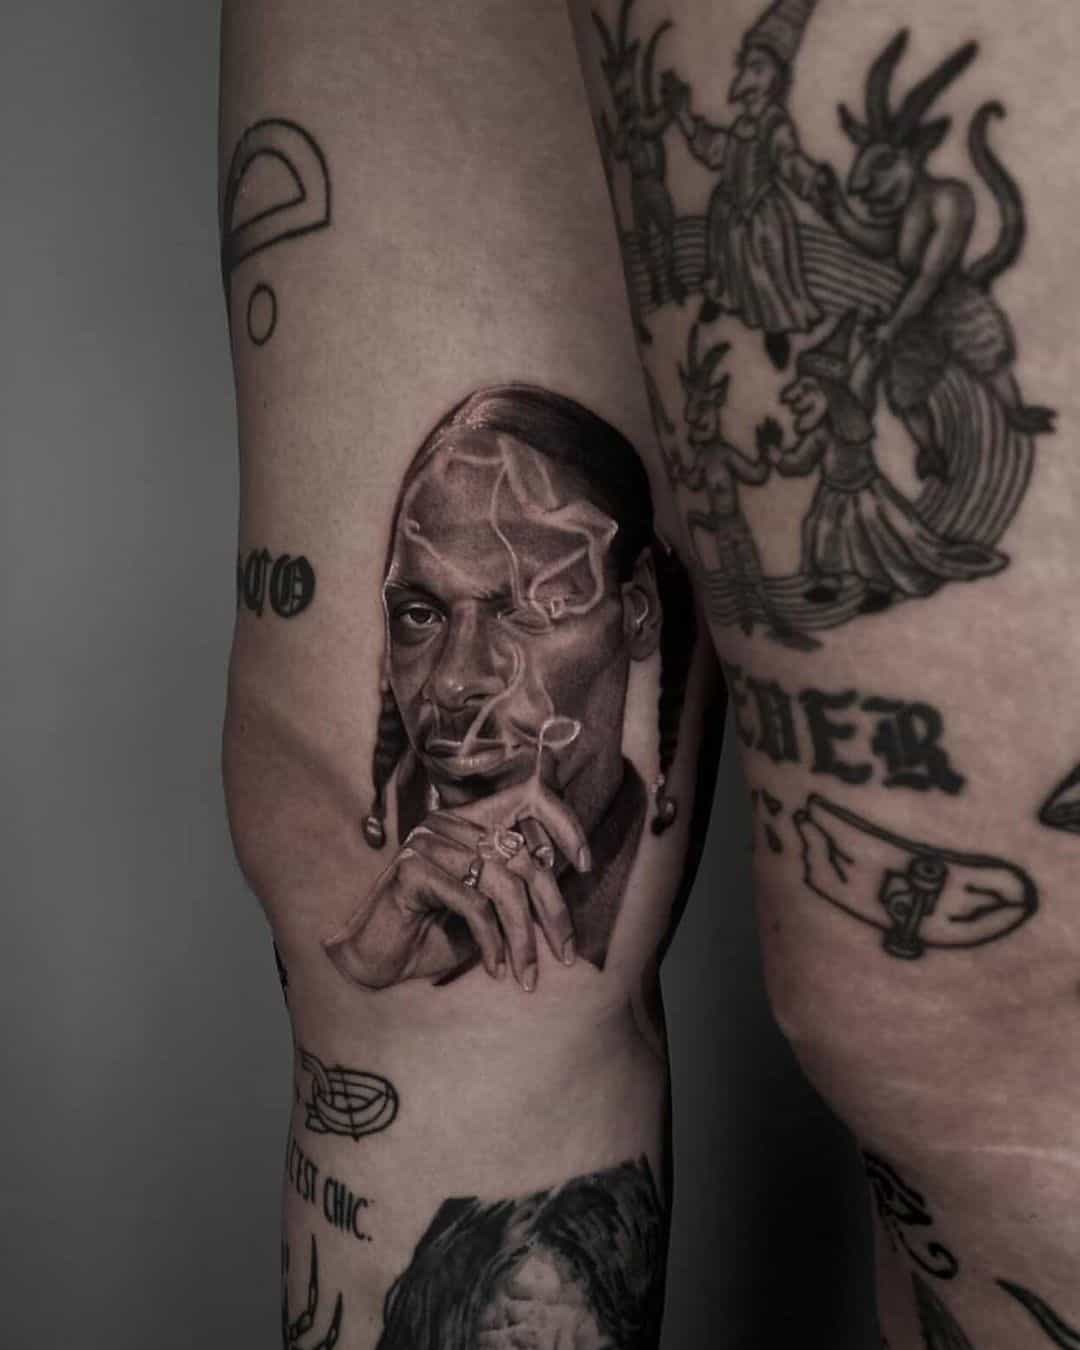 Snoop on arm by besaame.tattoo